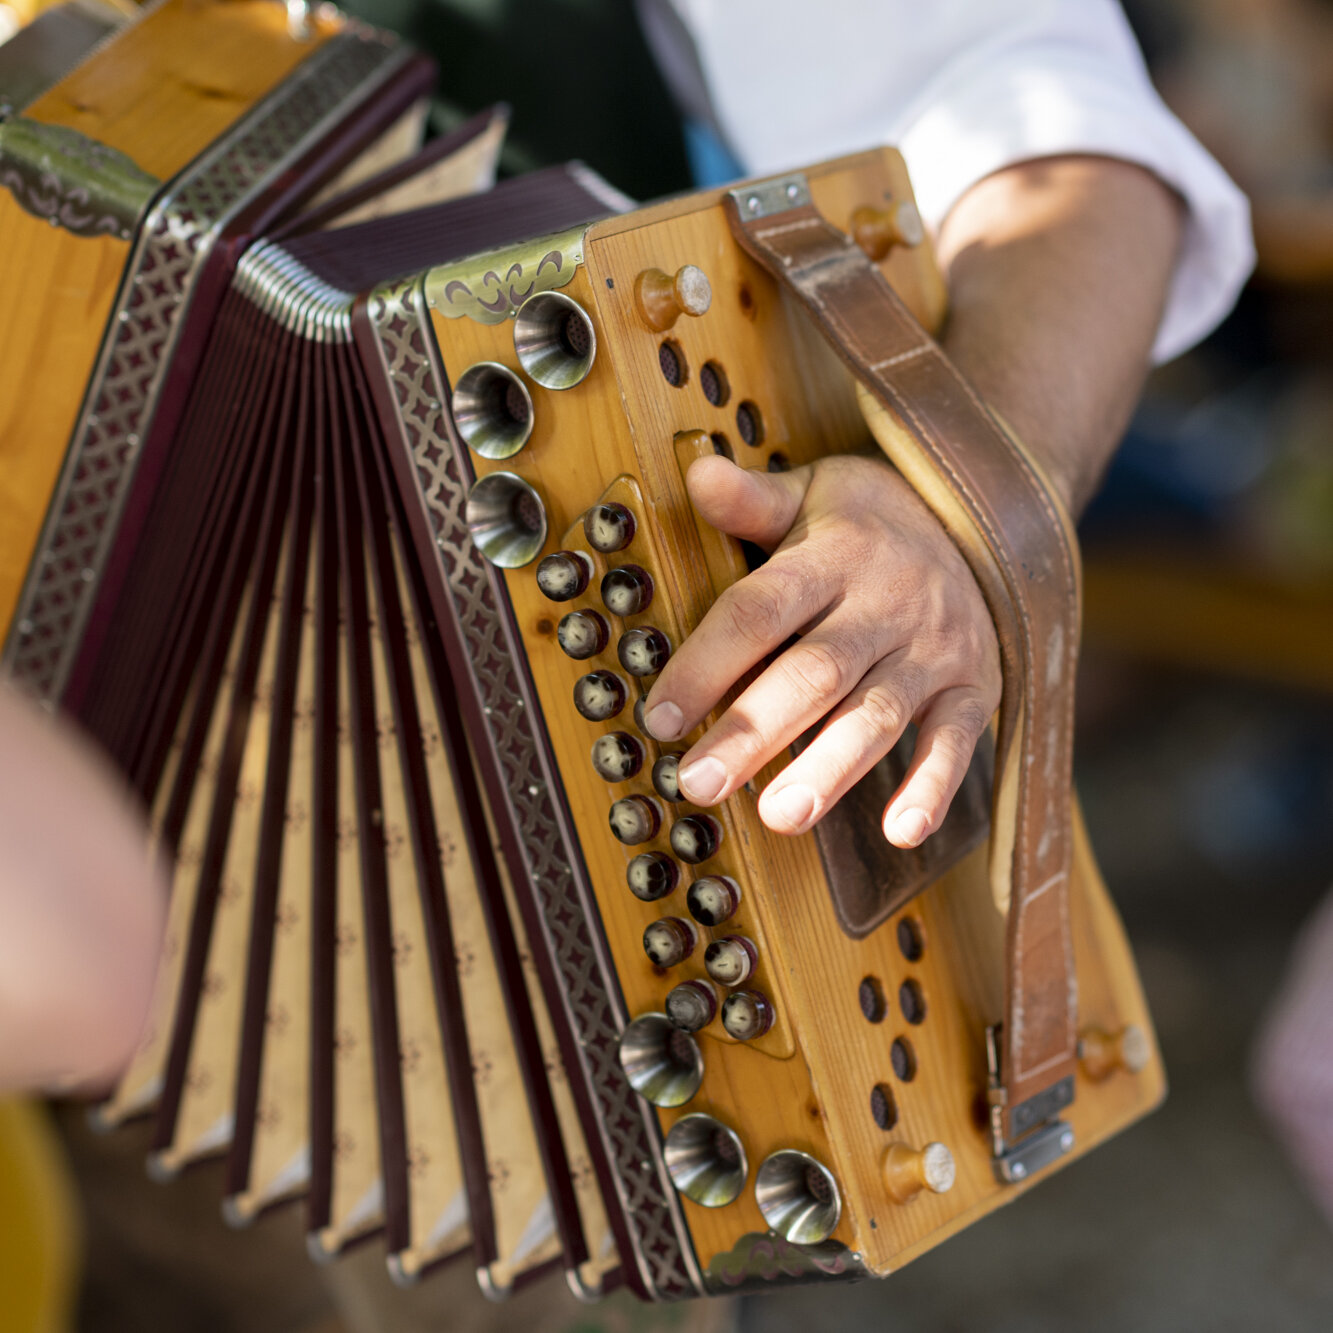 Genusstag mit bayrischer Musik im Schloss Biergarten